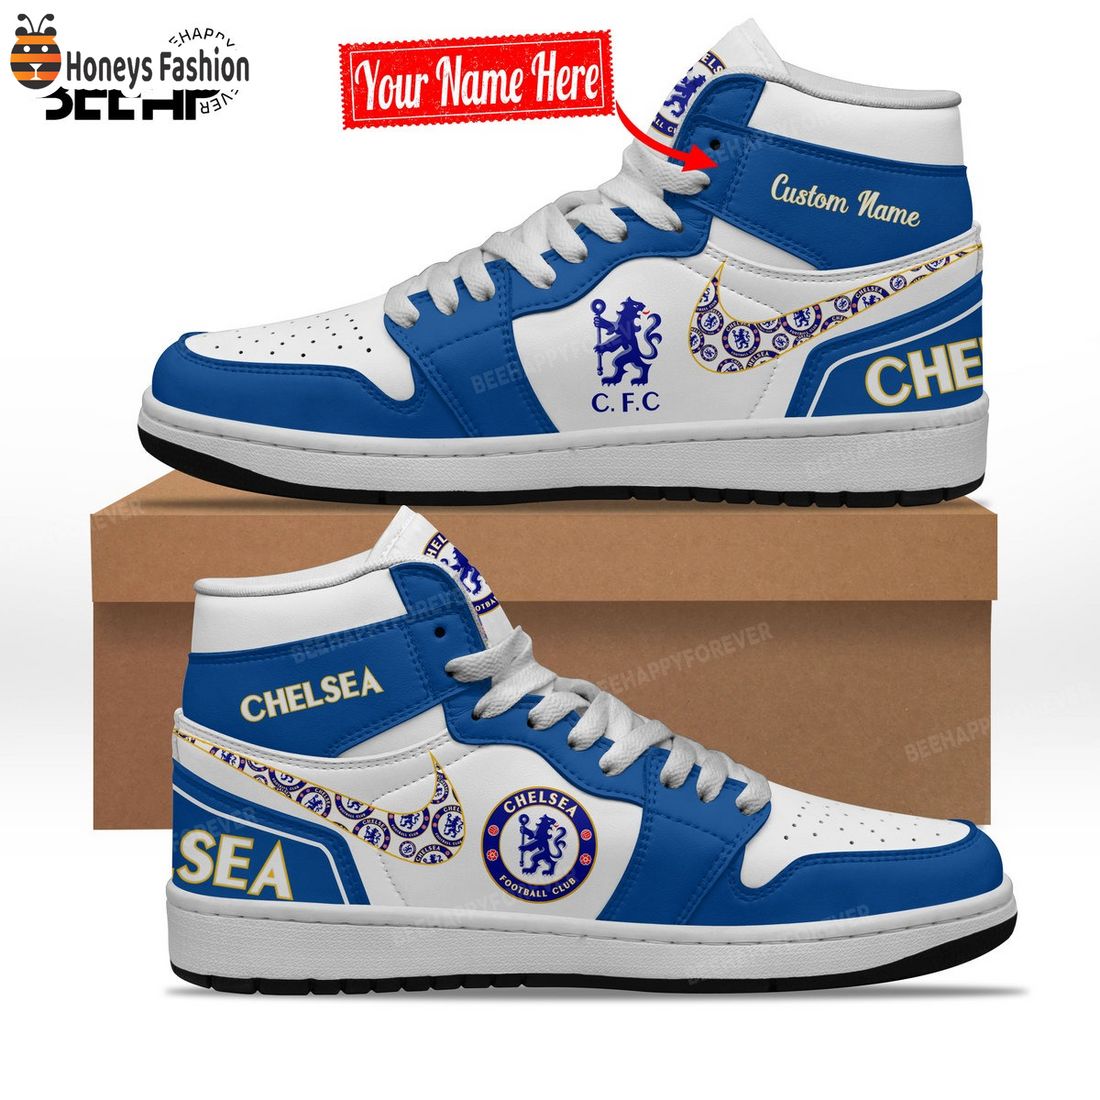 Chelsea Custom Name Nike Air Jordan 1 Shoes